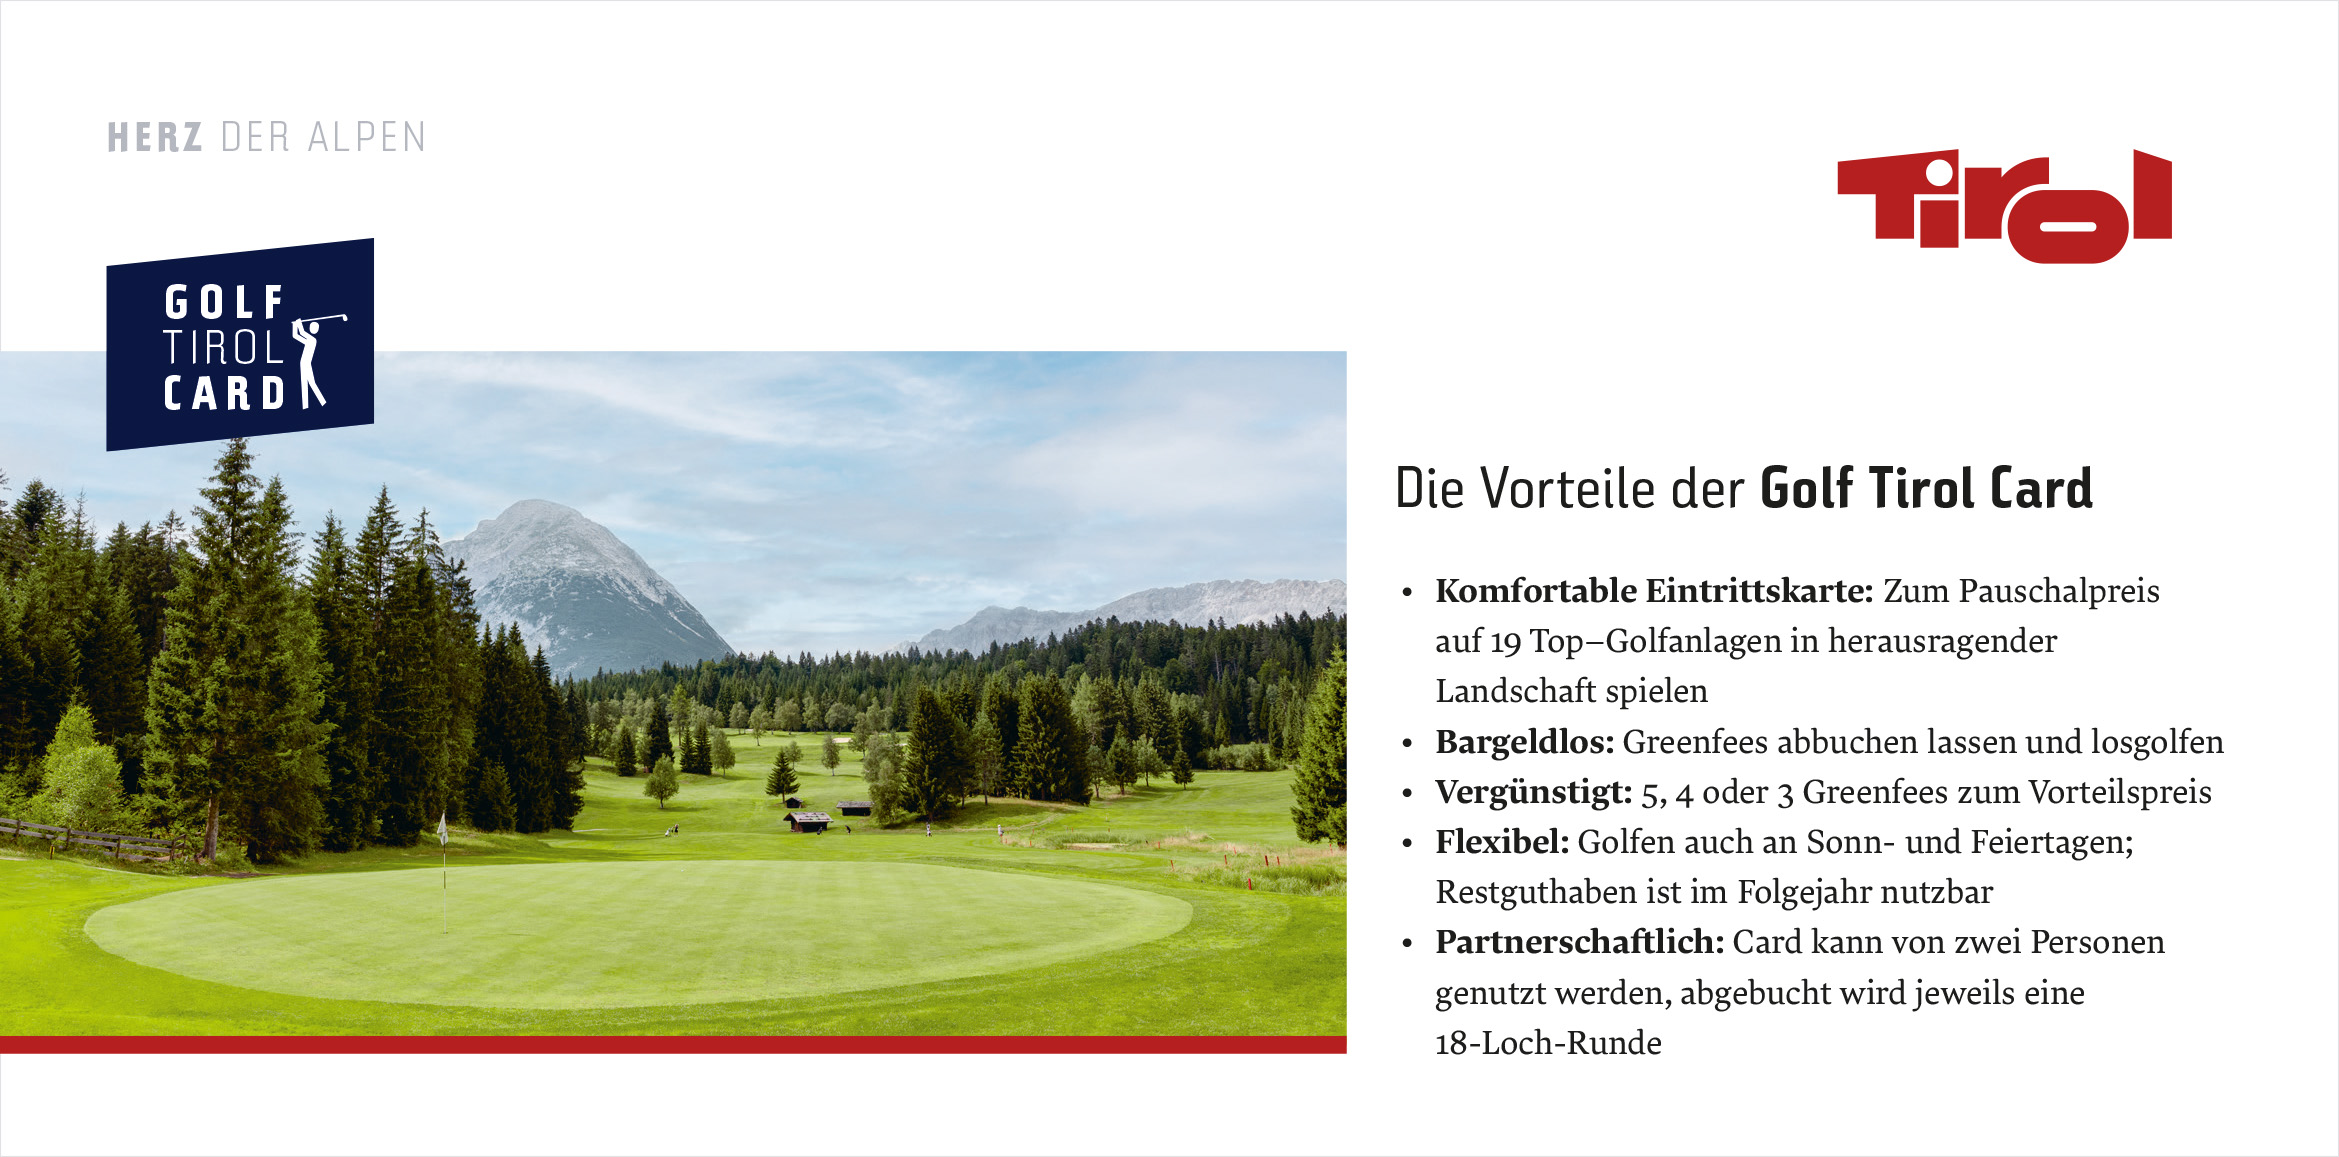 Die Vorteile der Golf Tirol Card